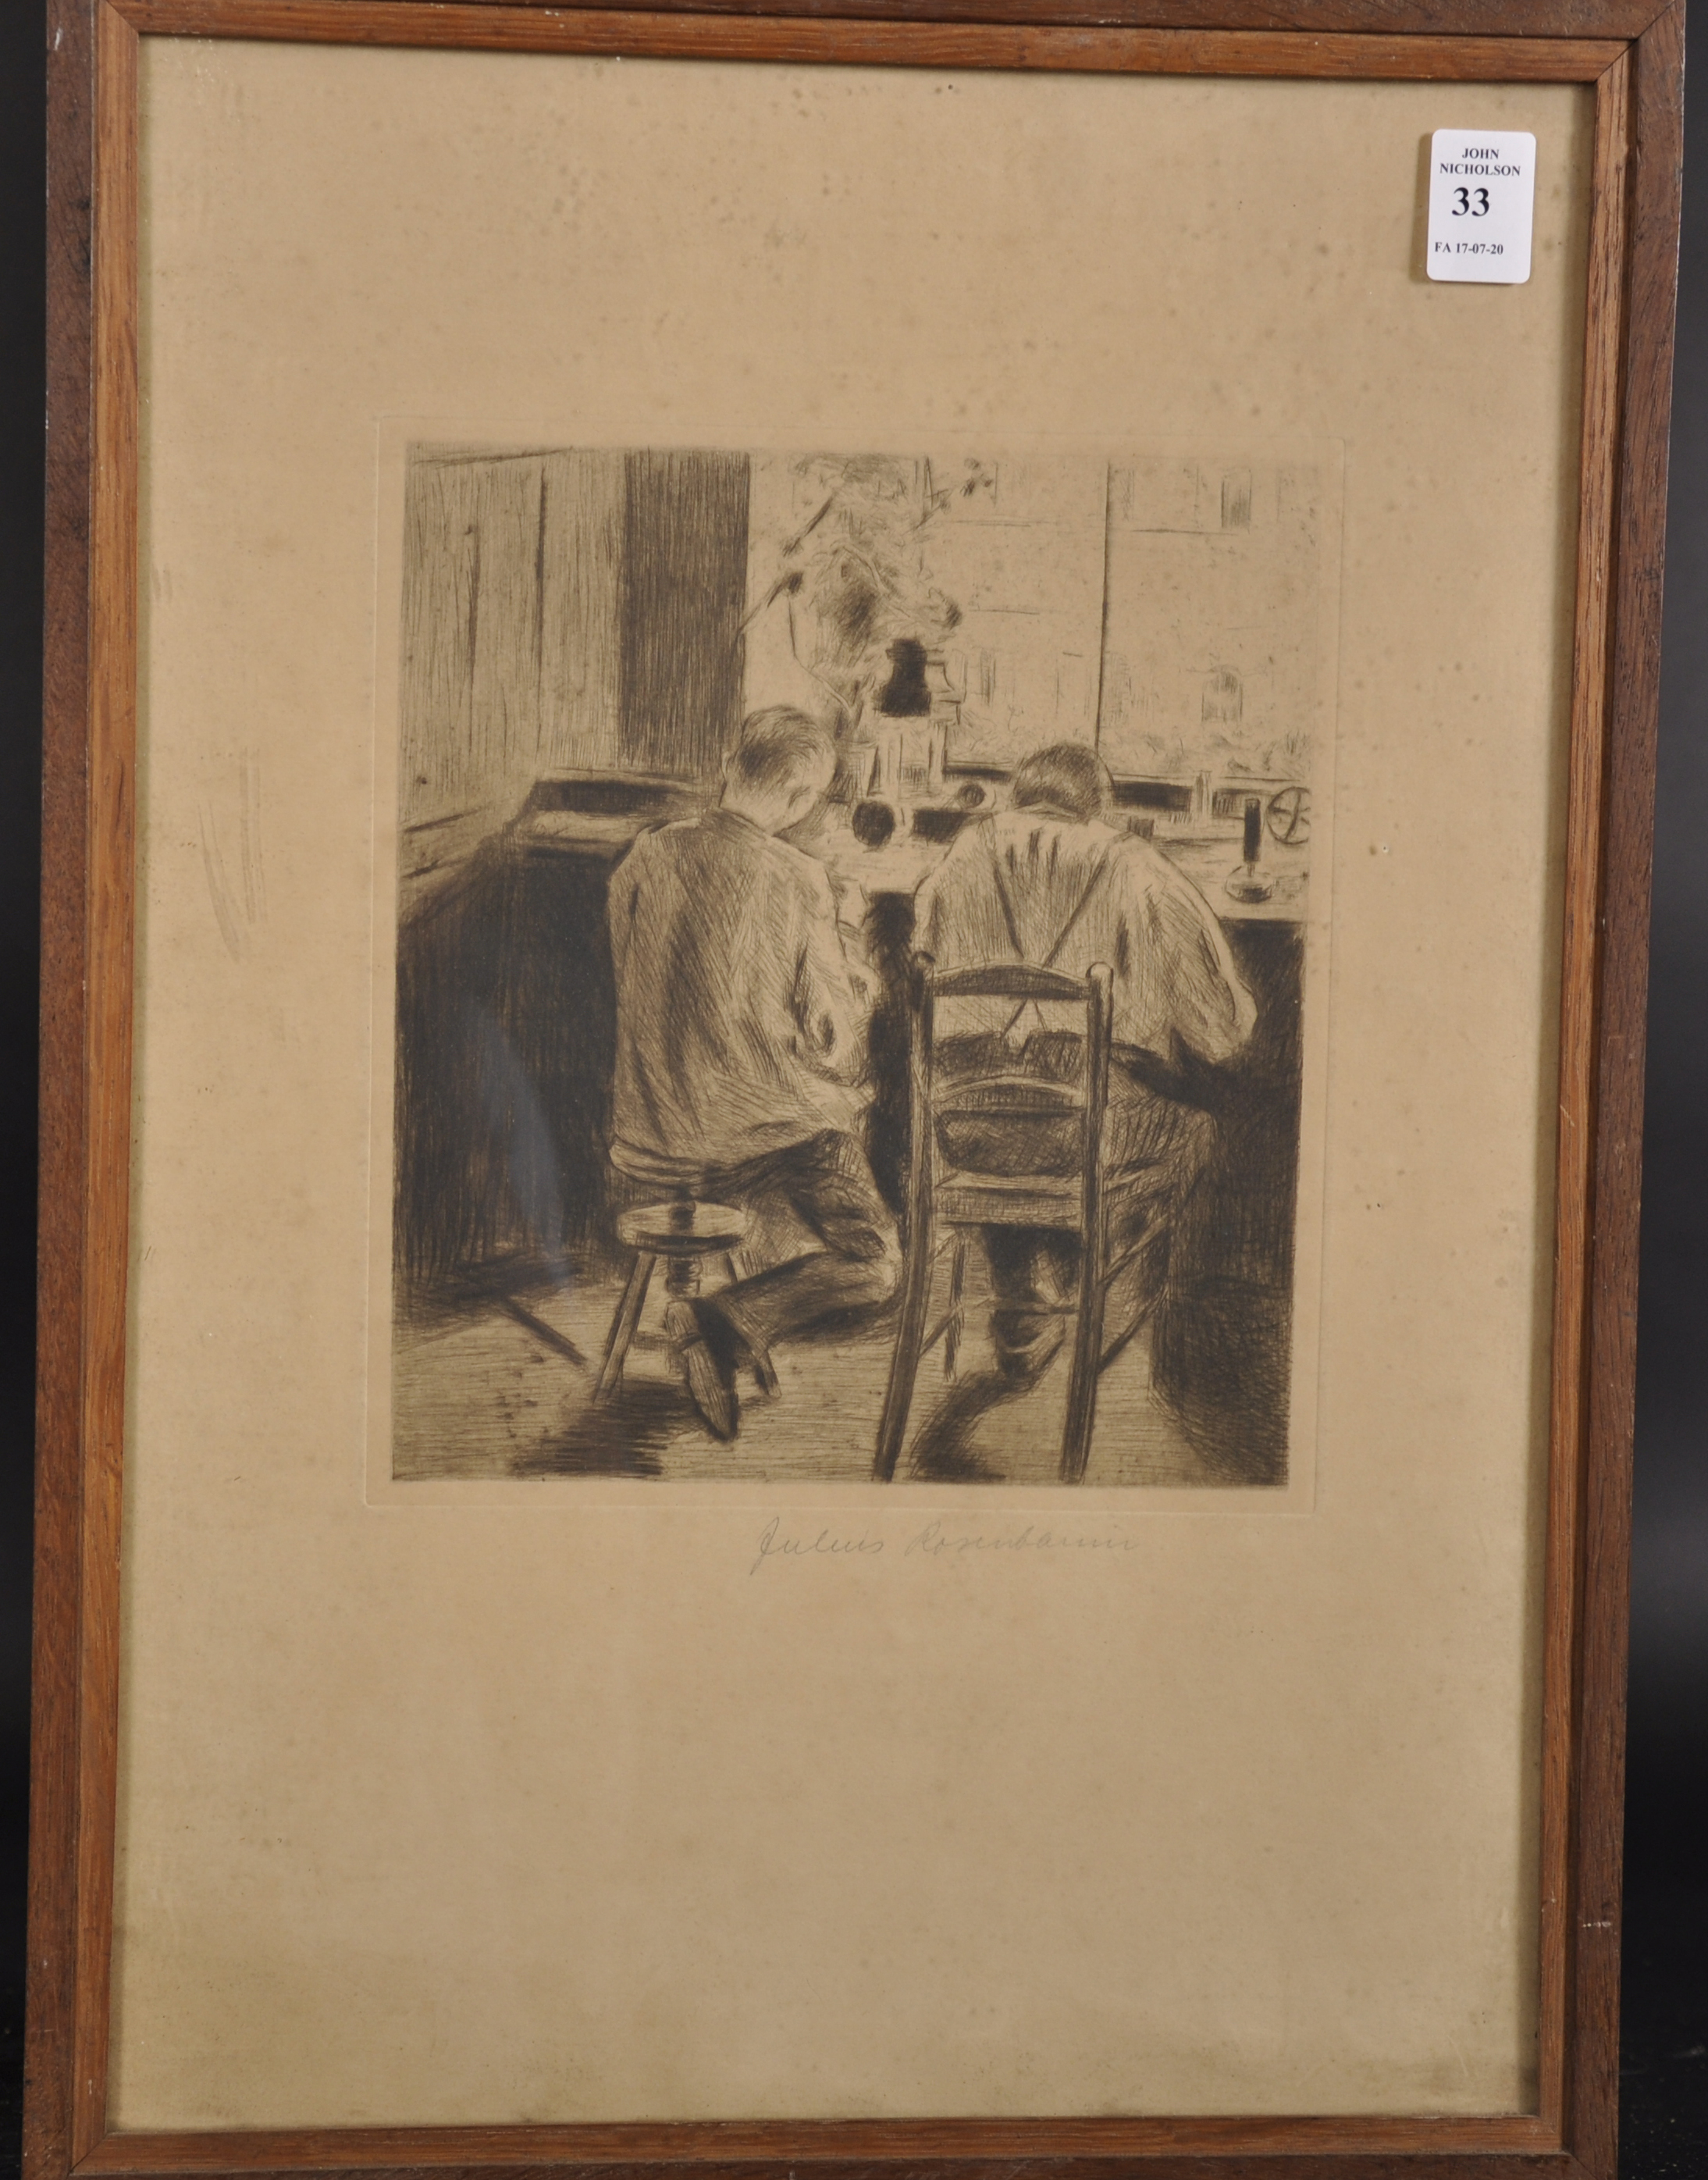 Julius Rosenbaum (1879-1956) Danish. In the Workshop, Etching, 8.5" x 7.5". - Image 2 of 4